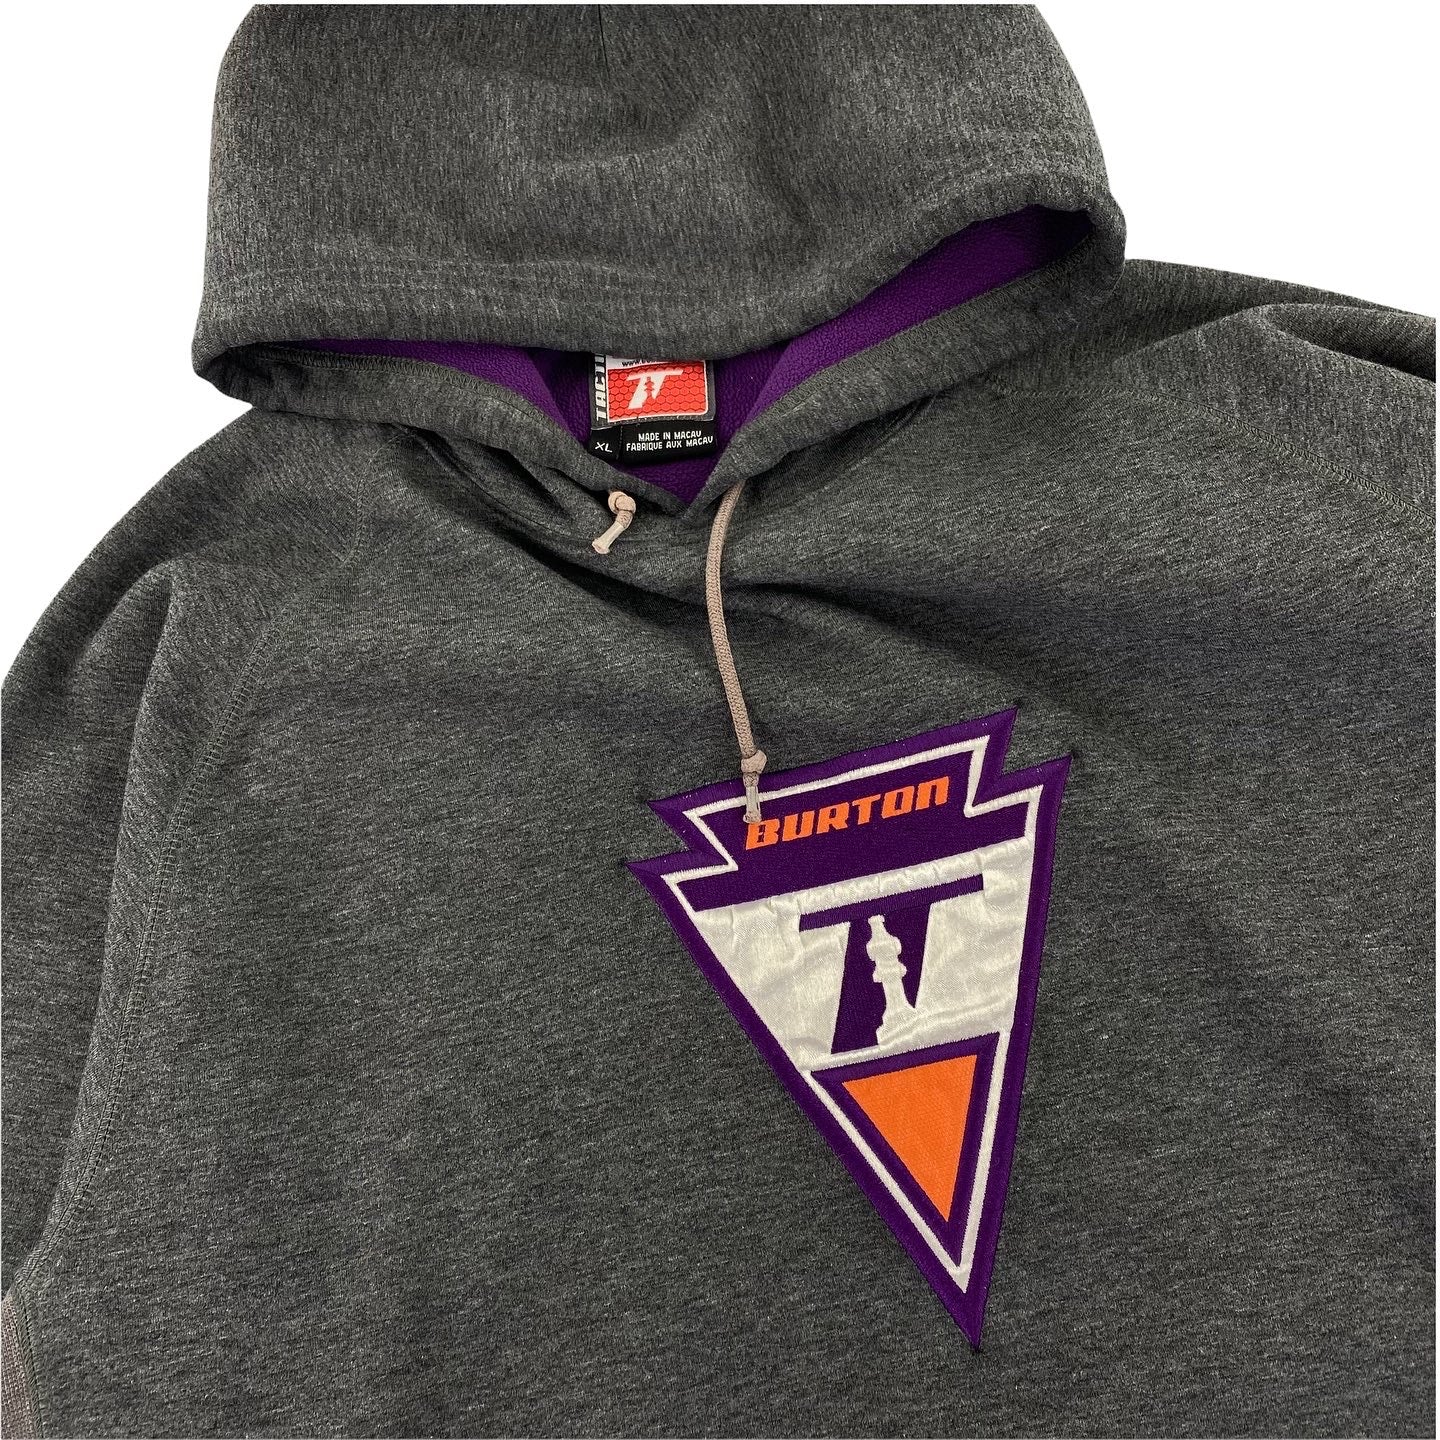 Y2K Burton Tactic hooded sweatshirt. XL